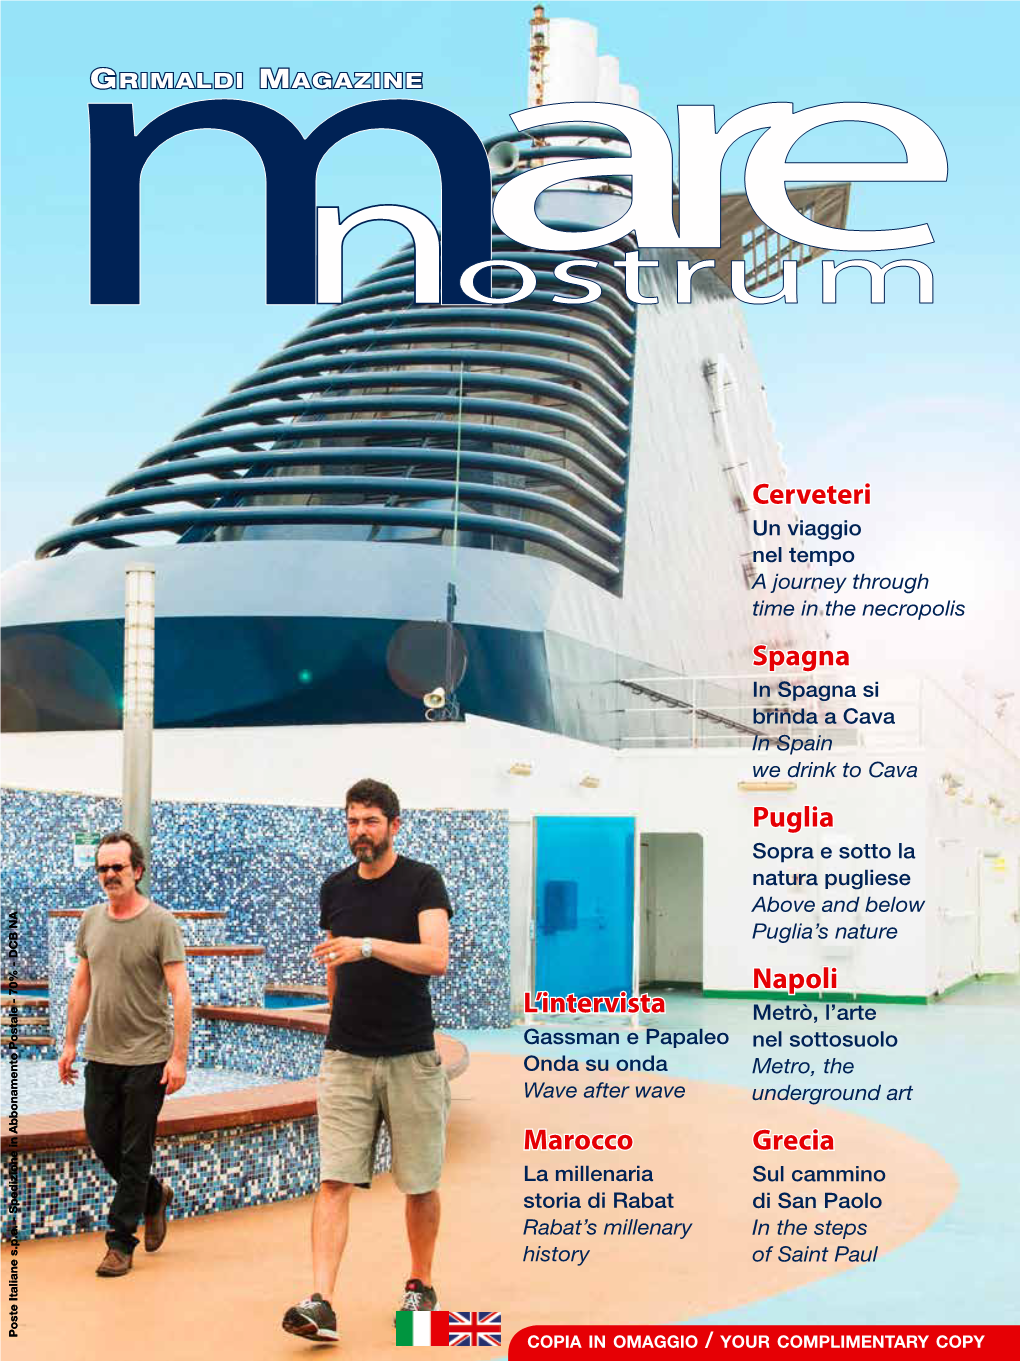 Grimaldi Magazine Mare Nostrum (Year